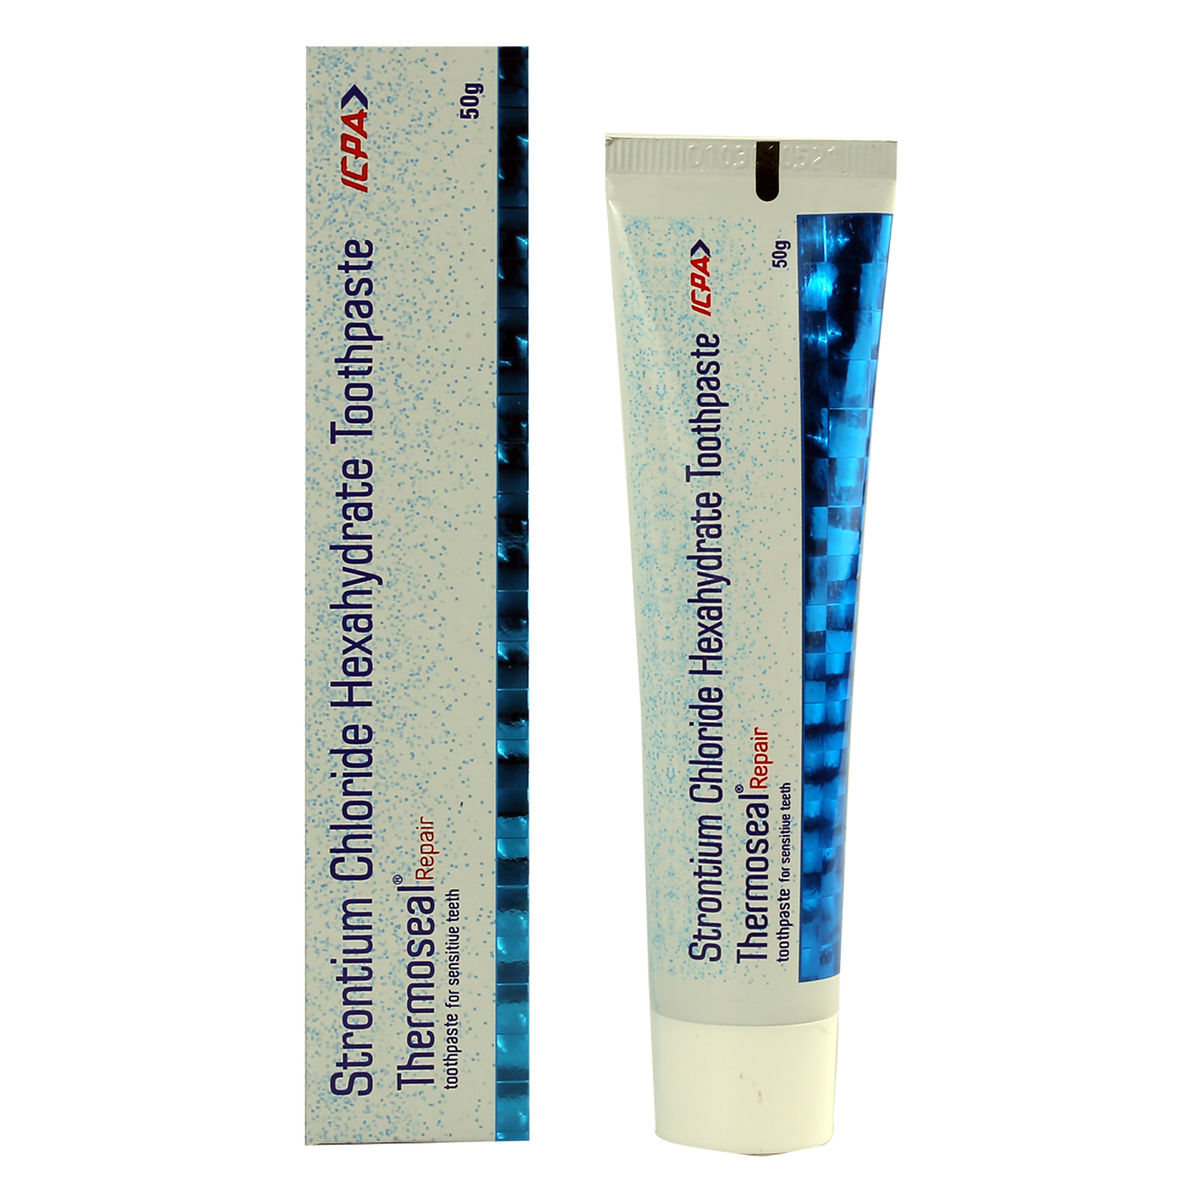 Buy Thermoseal Repair Sensitive Teeth Toothpaste, 50 gm Online